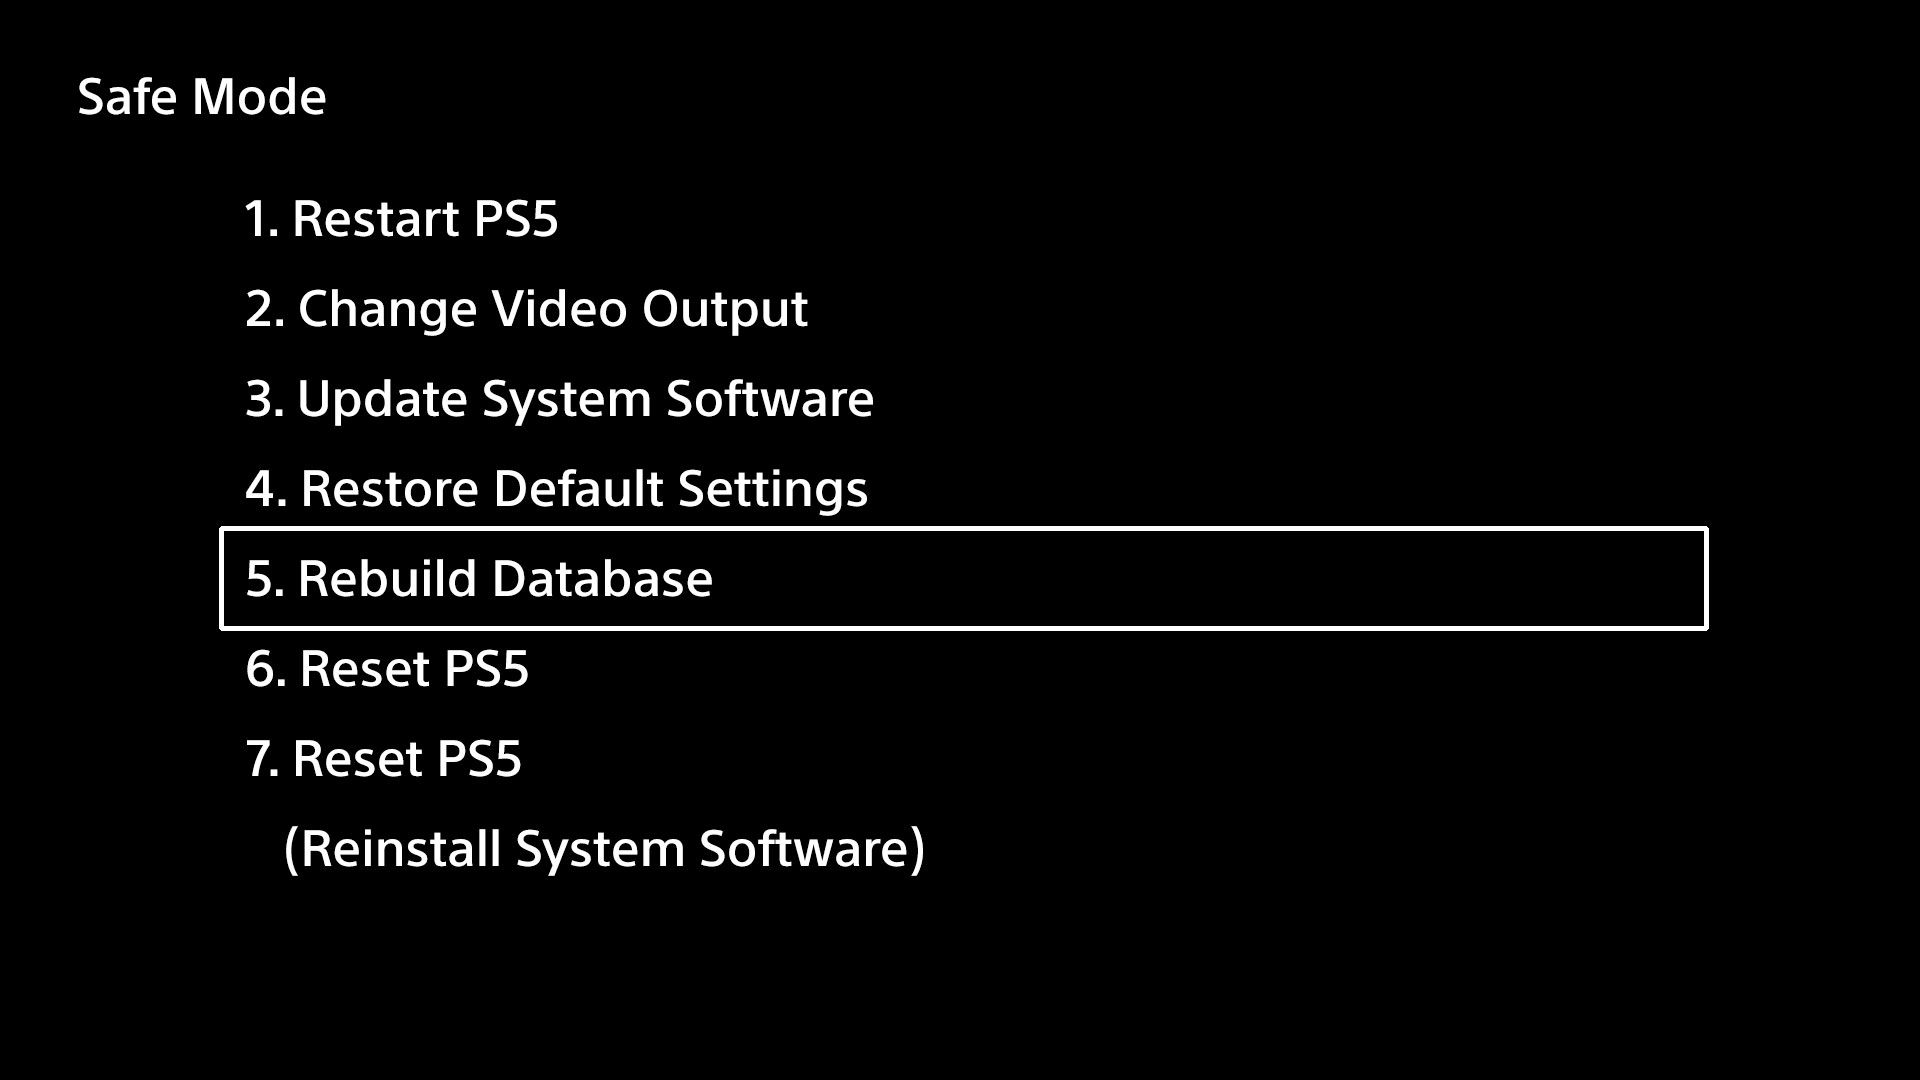 PS5 Safe Mode Menu